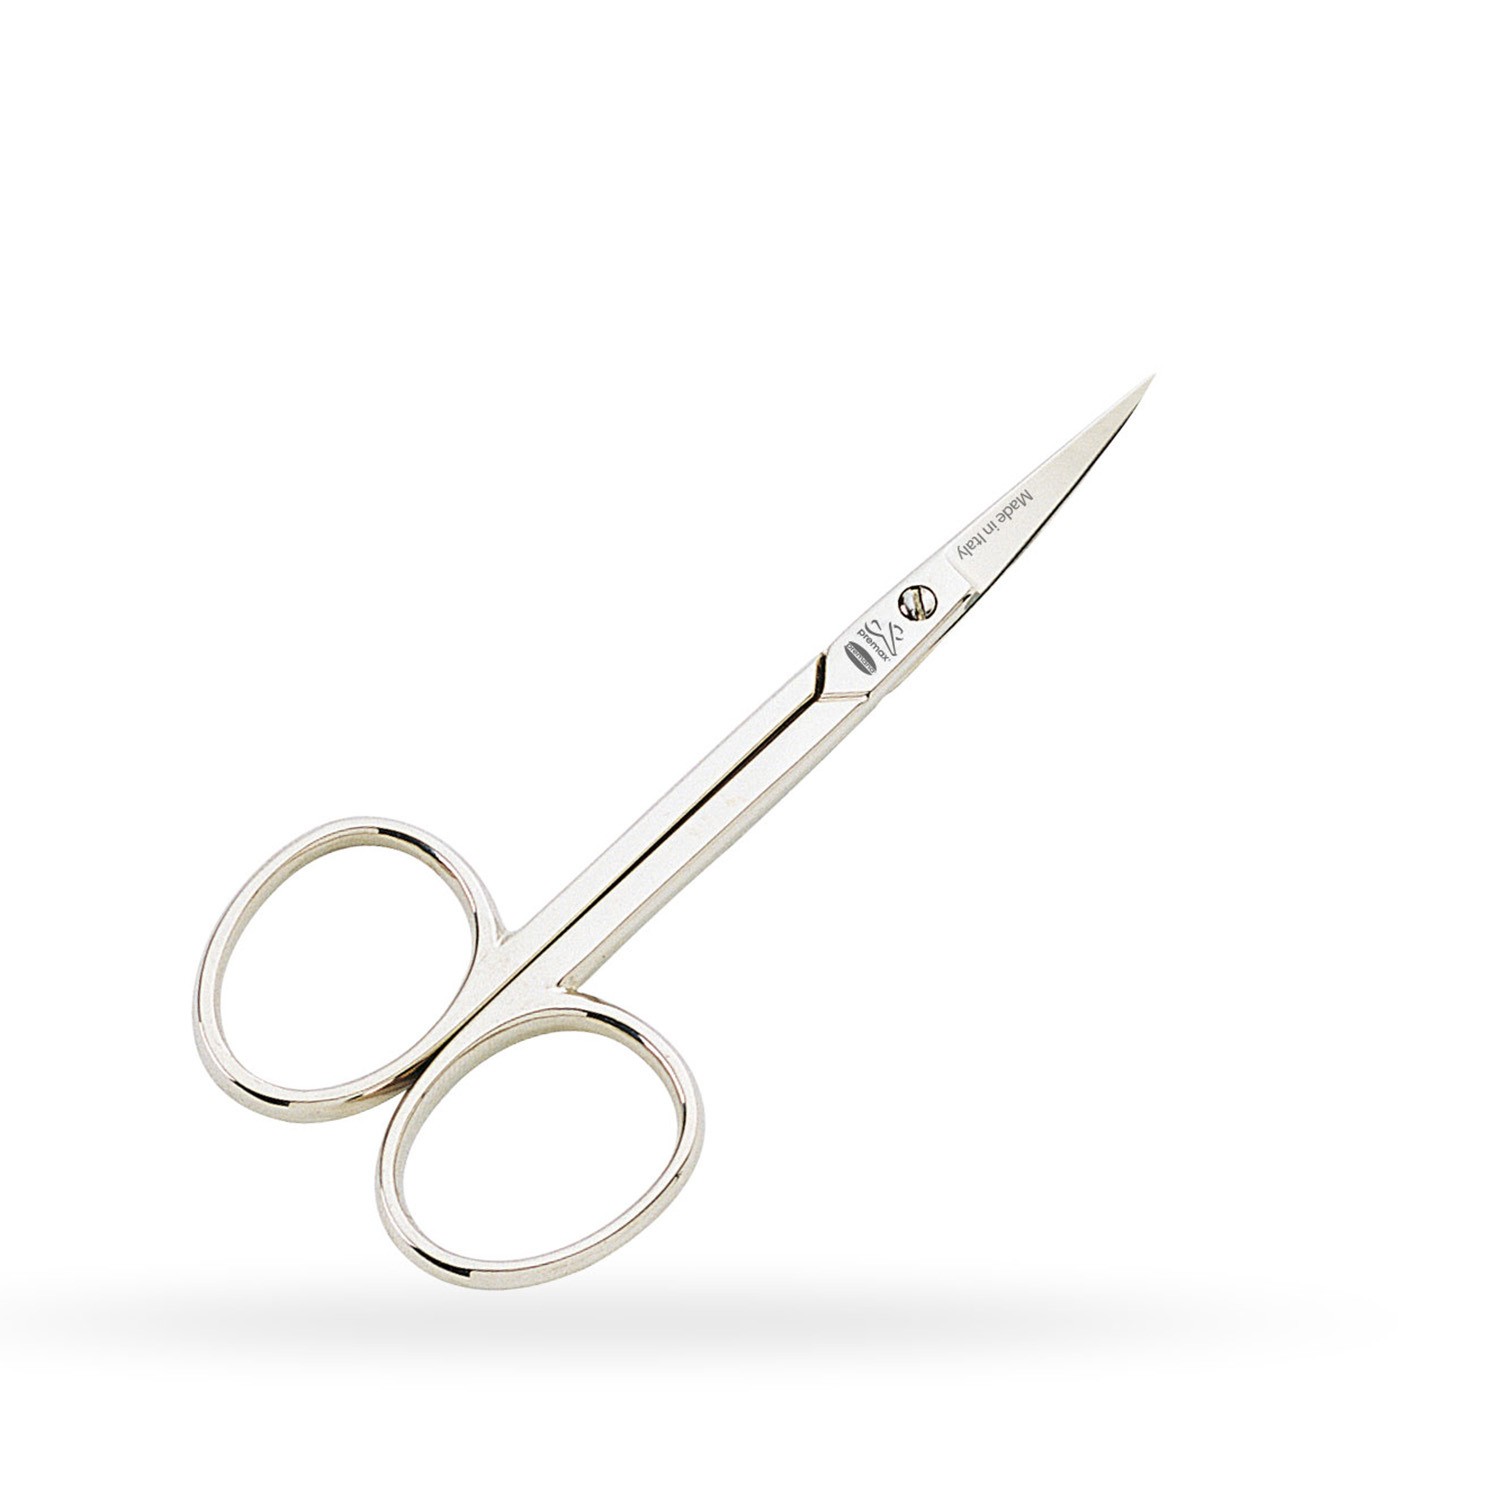 Premax Cuticle Scissors 3-1 / 2 "Straight Tip